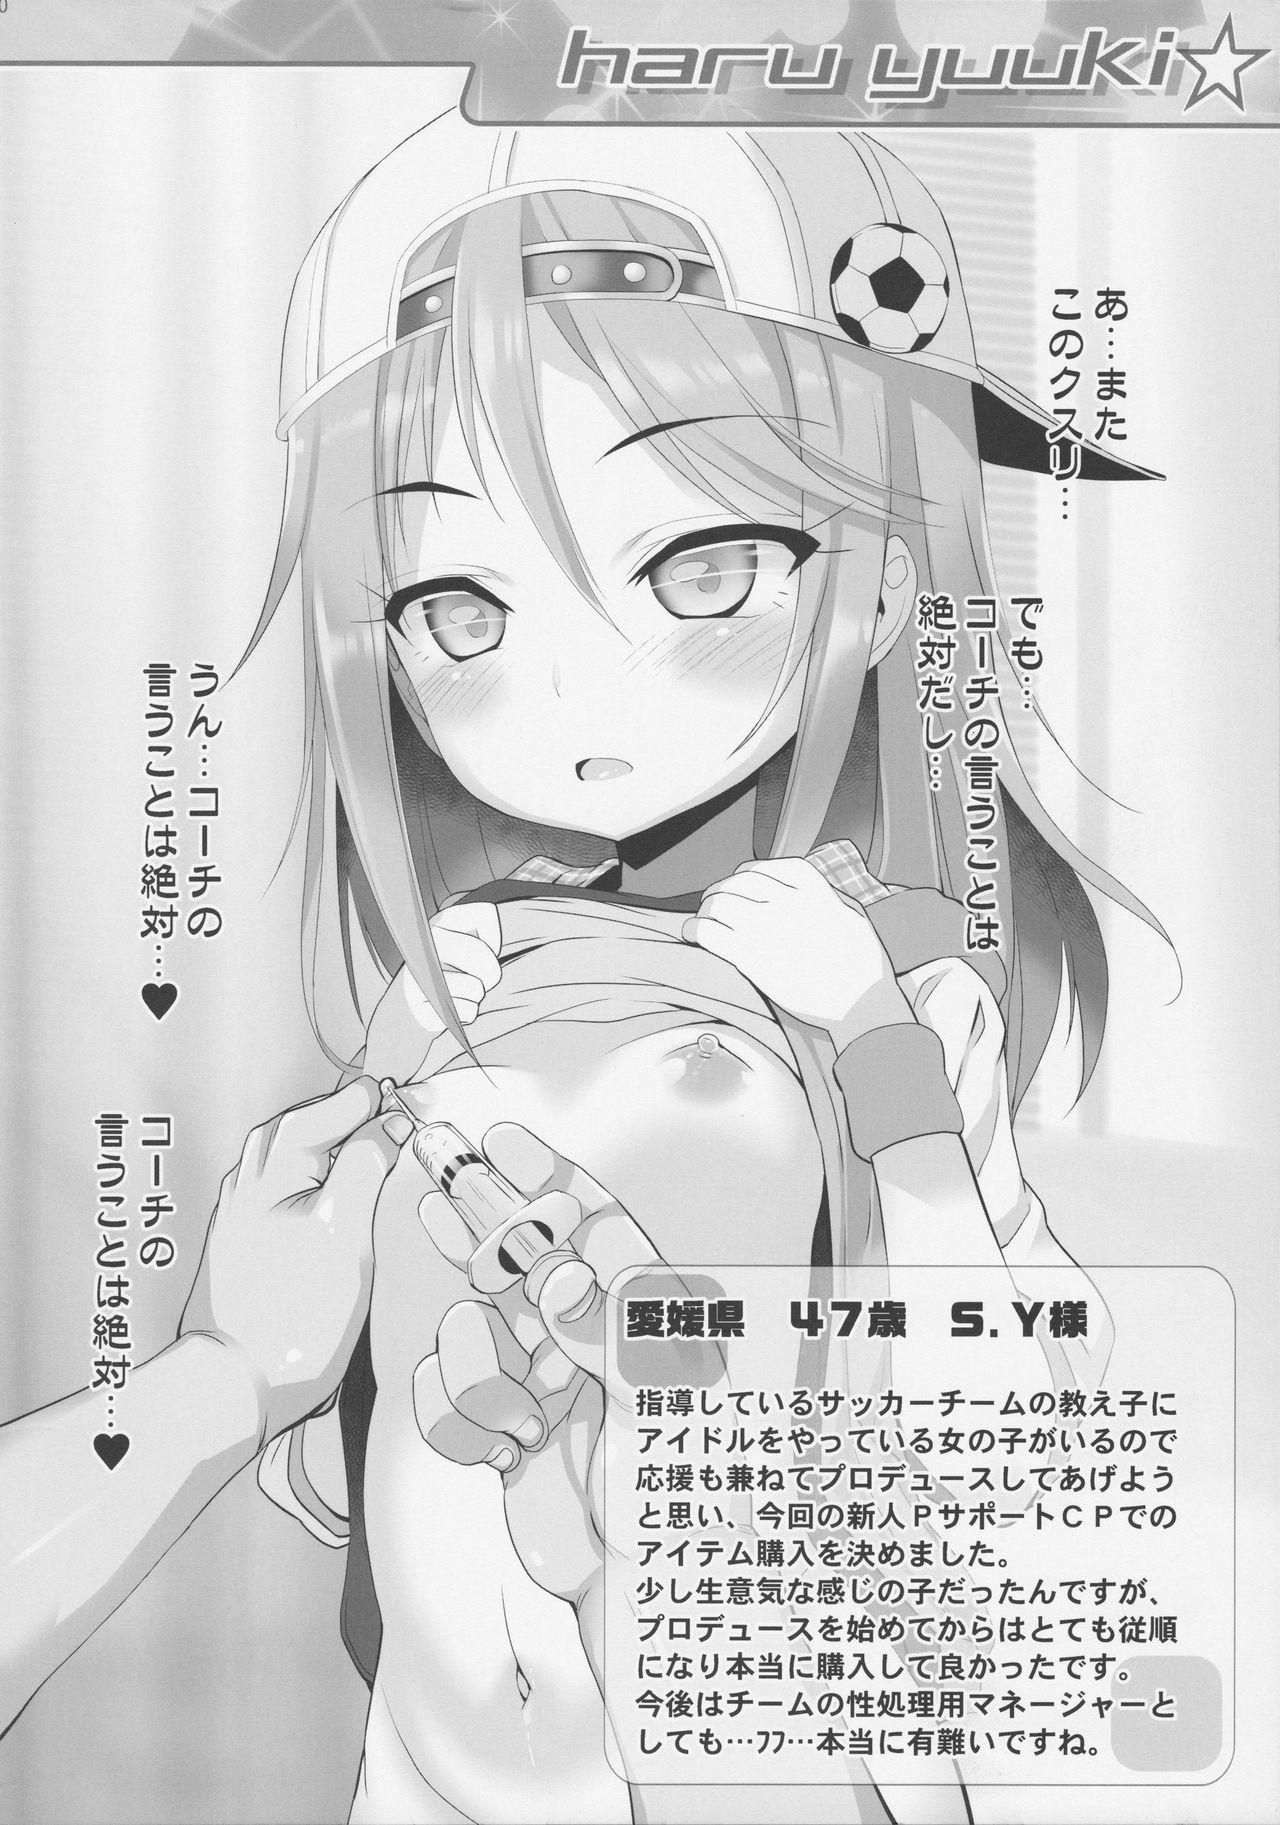 Anime Okosama Okusuri Produce +++++ - The idolmaster Argentina - Page 9